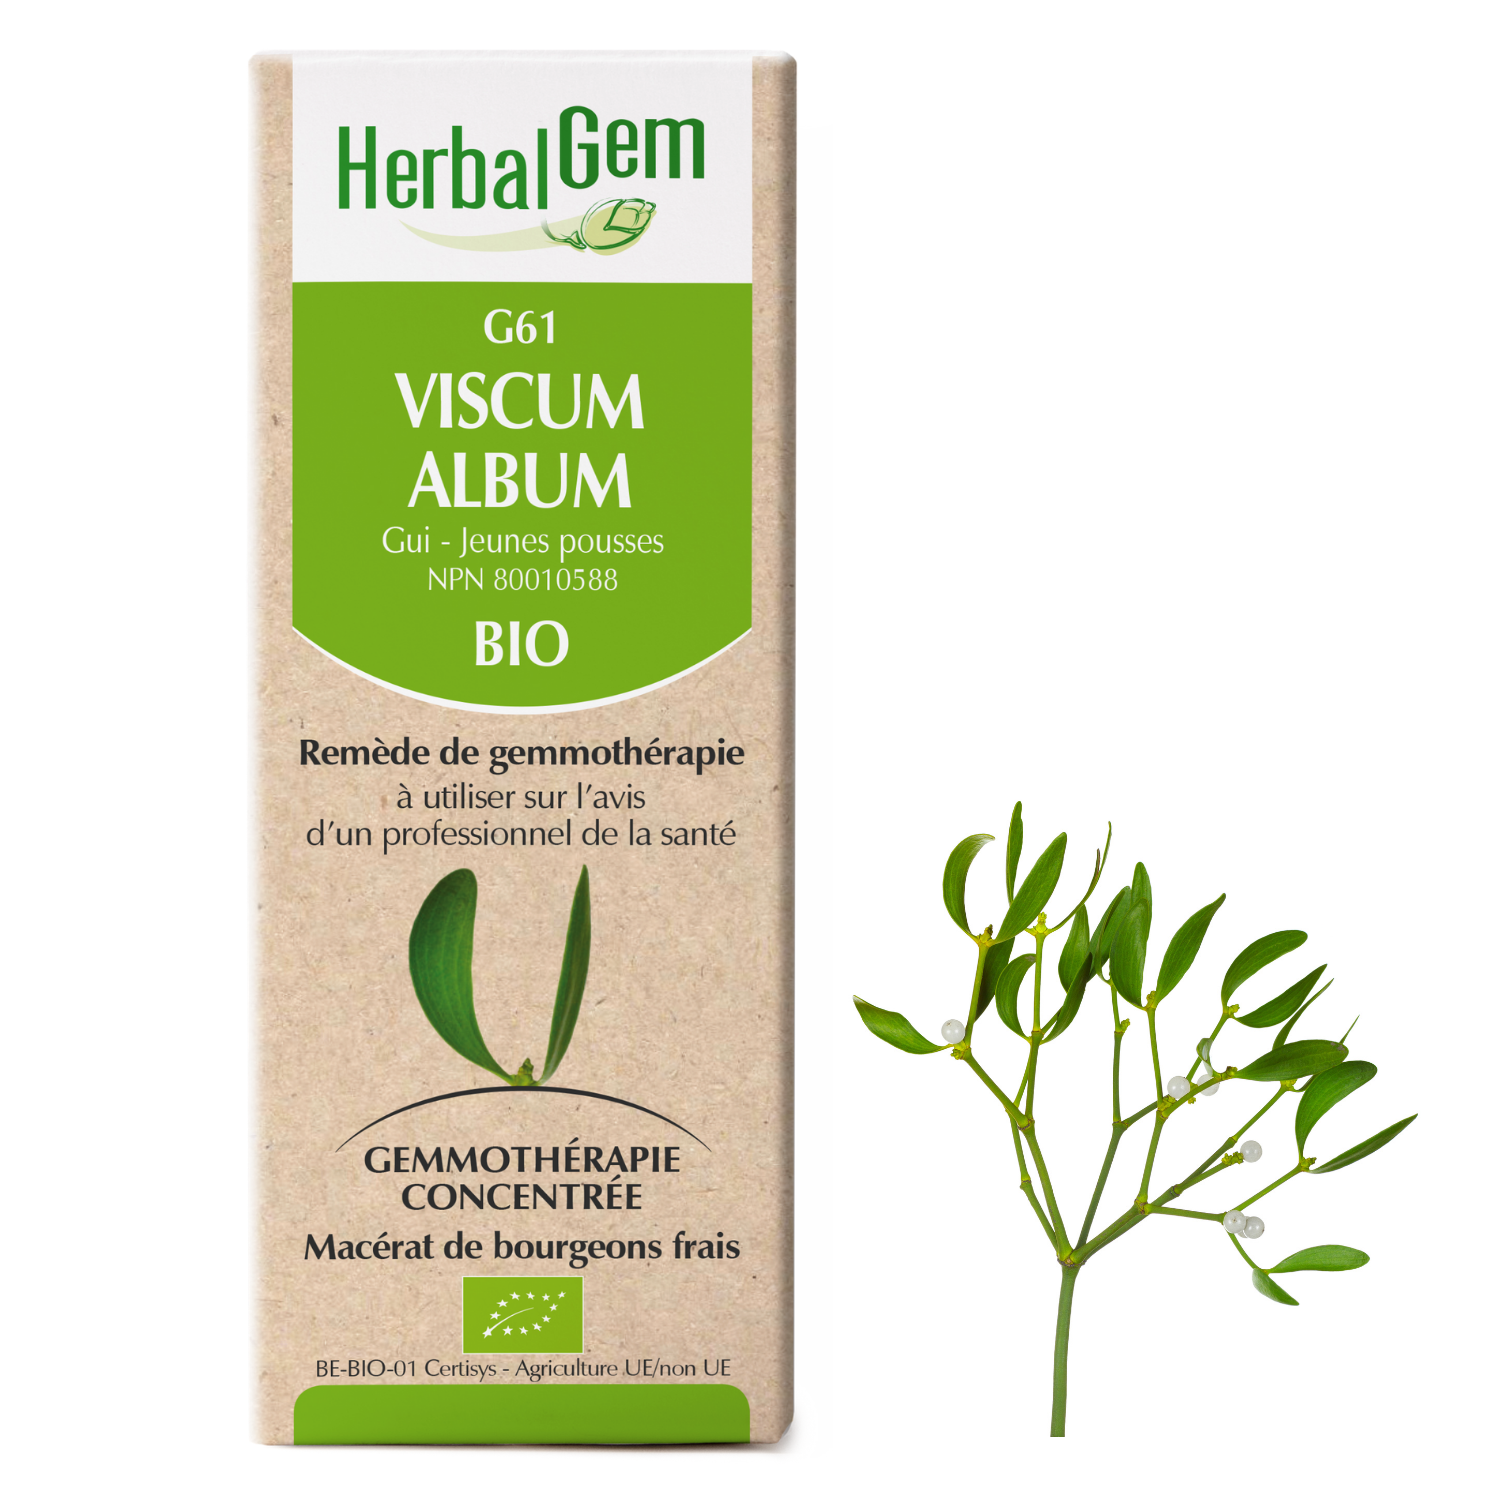 Viscum album (Mistletoe) G61